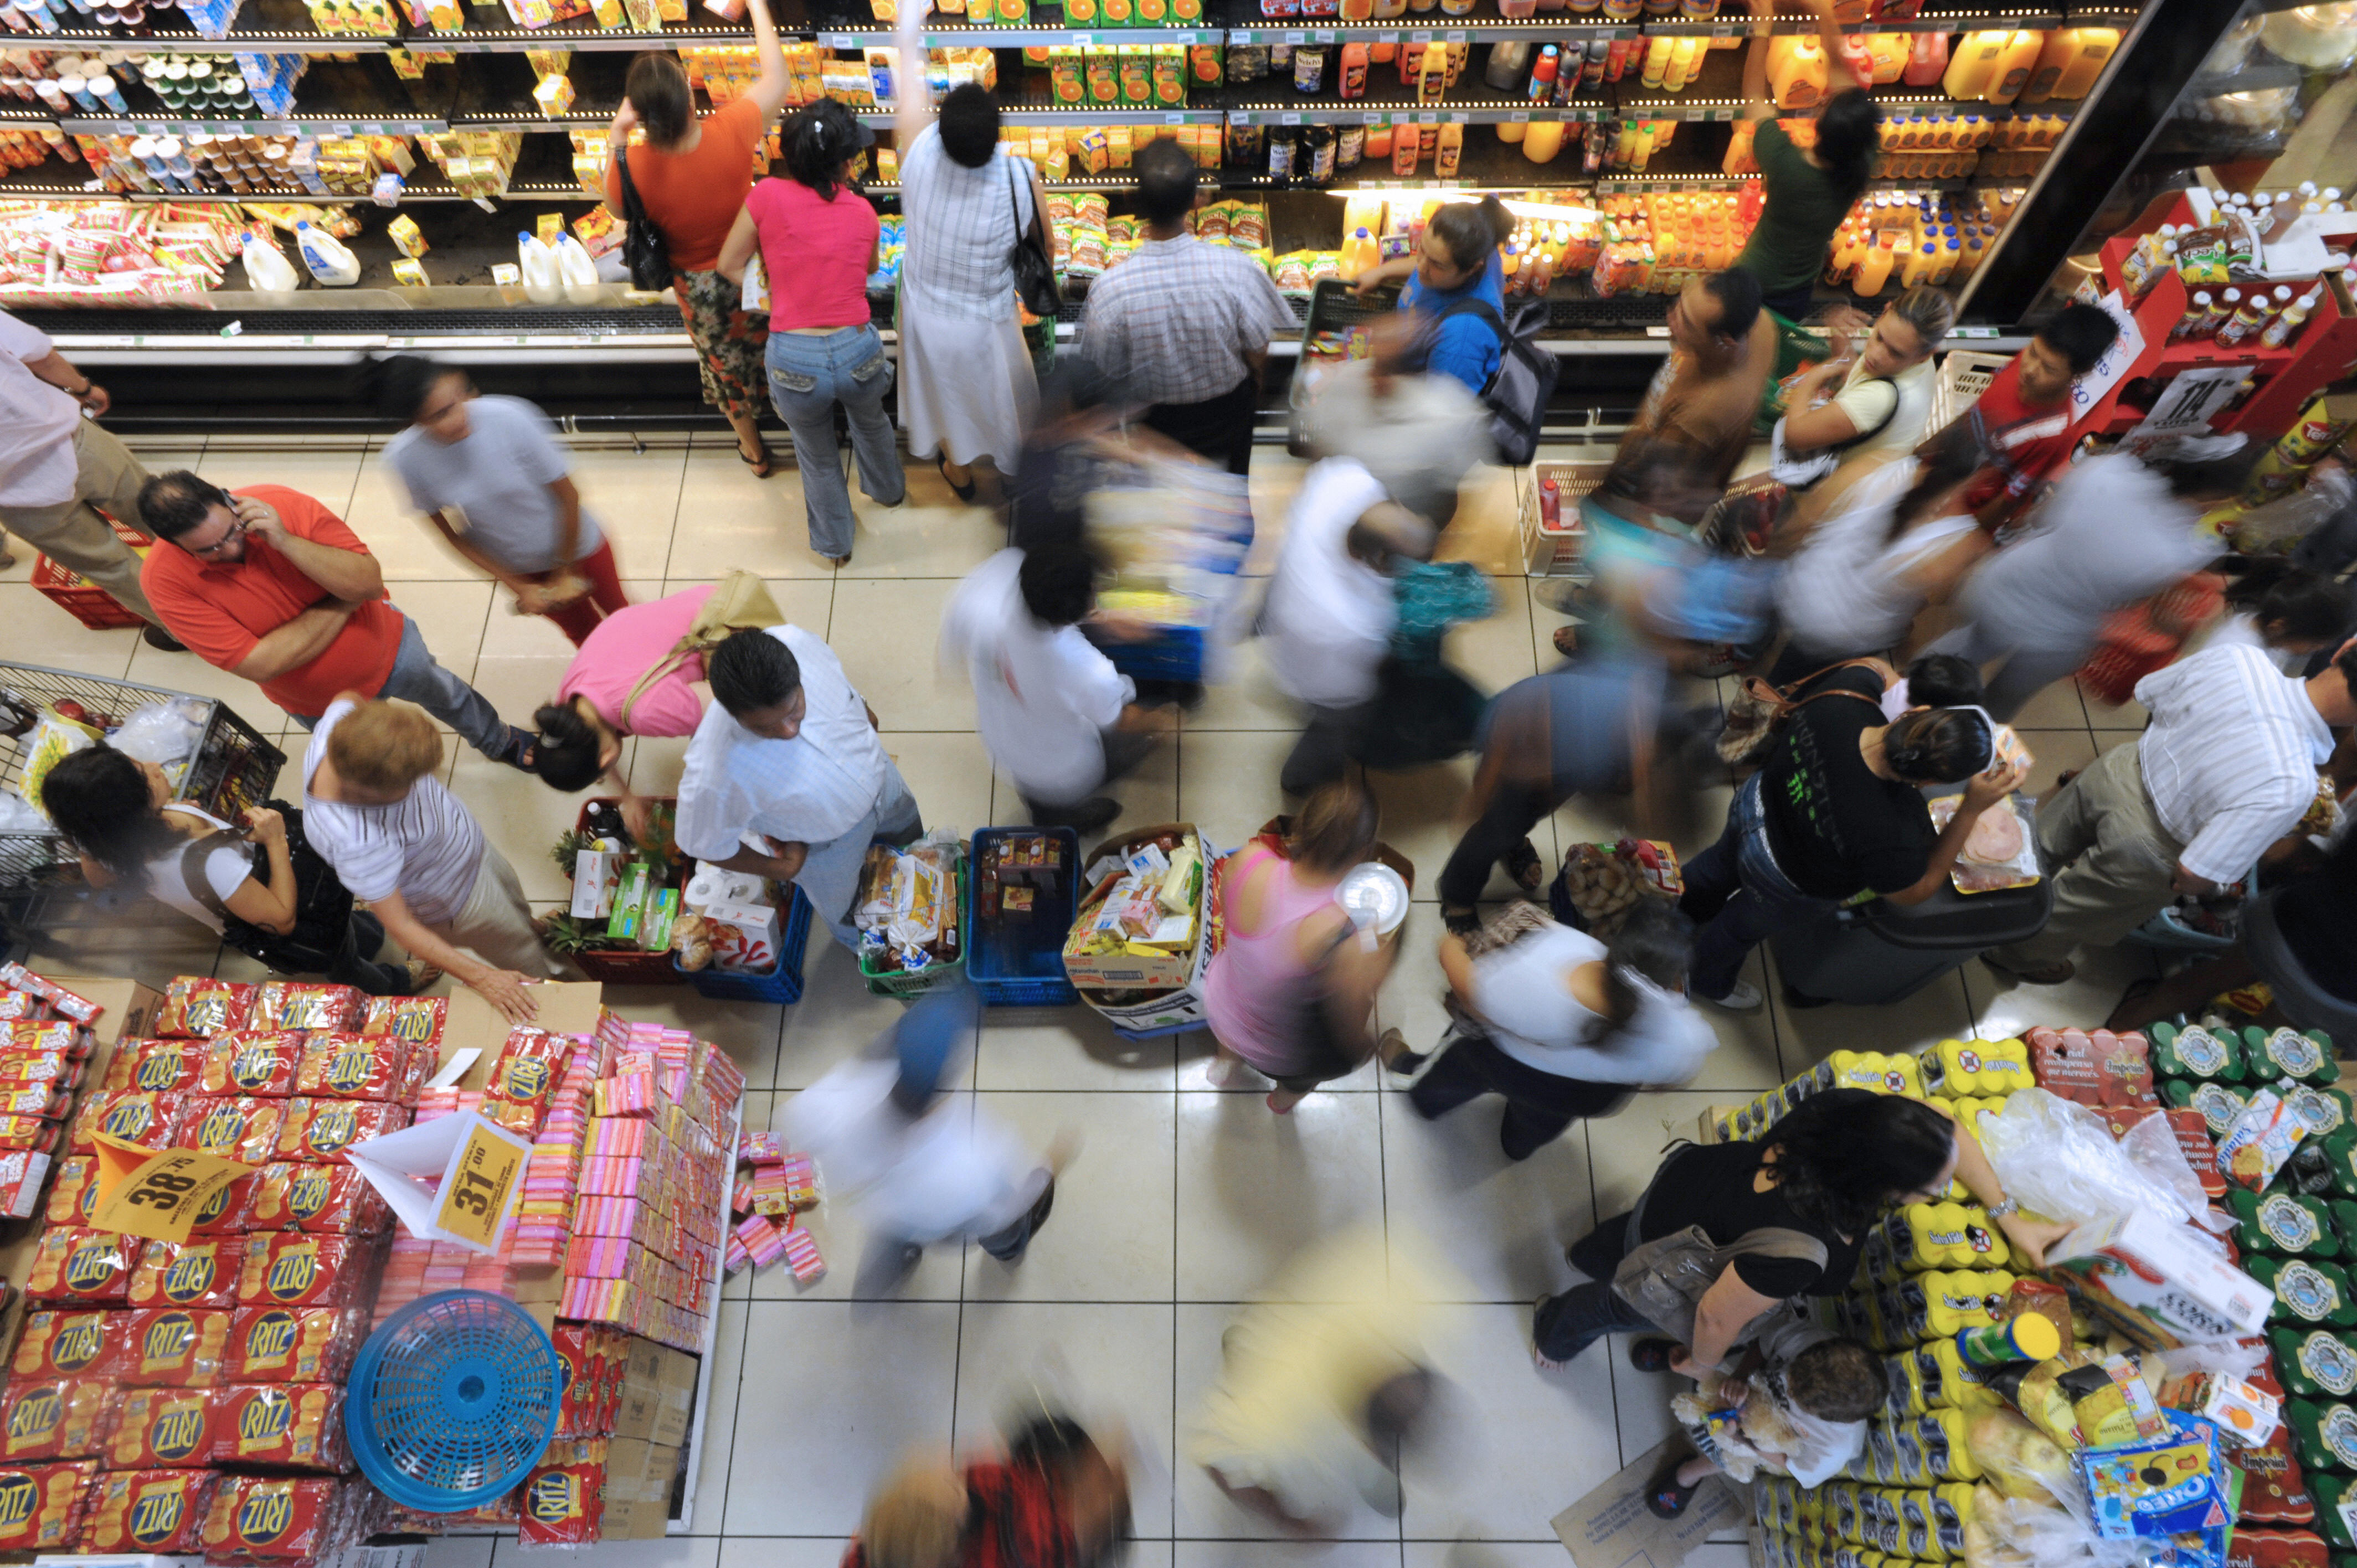 Έρευνα ΙΟΒΕ: Λιγότερο απαισιόδοξοι, αλλά βέβαιοι ότι τα χειρότερα για την ακρίβεια «έρχονται» οι καταναλωτές